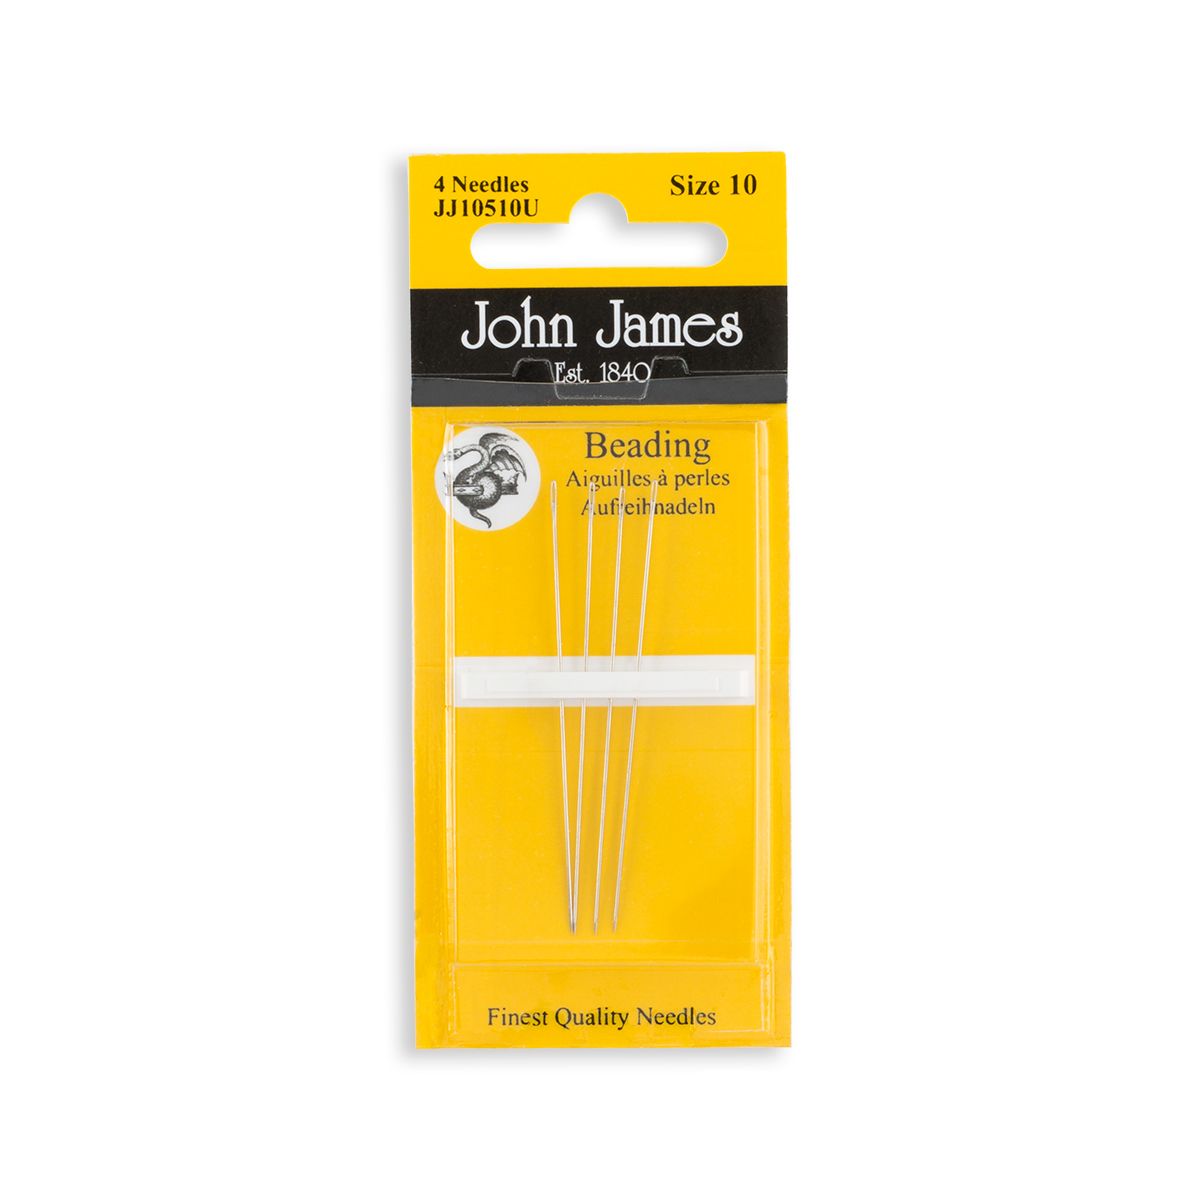 English Beading Needles, Size 10- 4 Pack